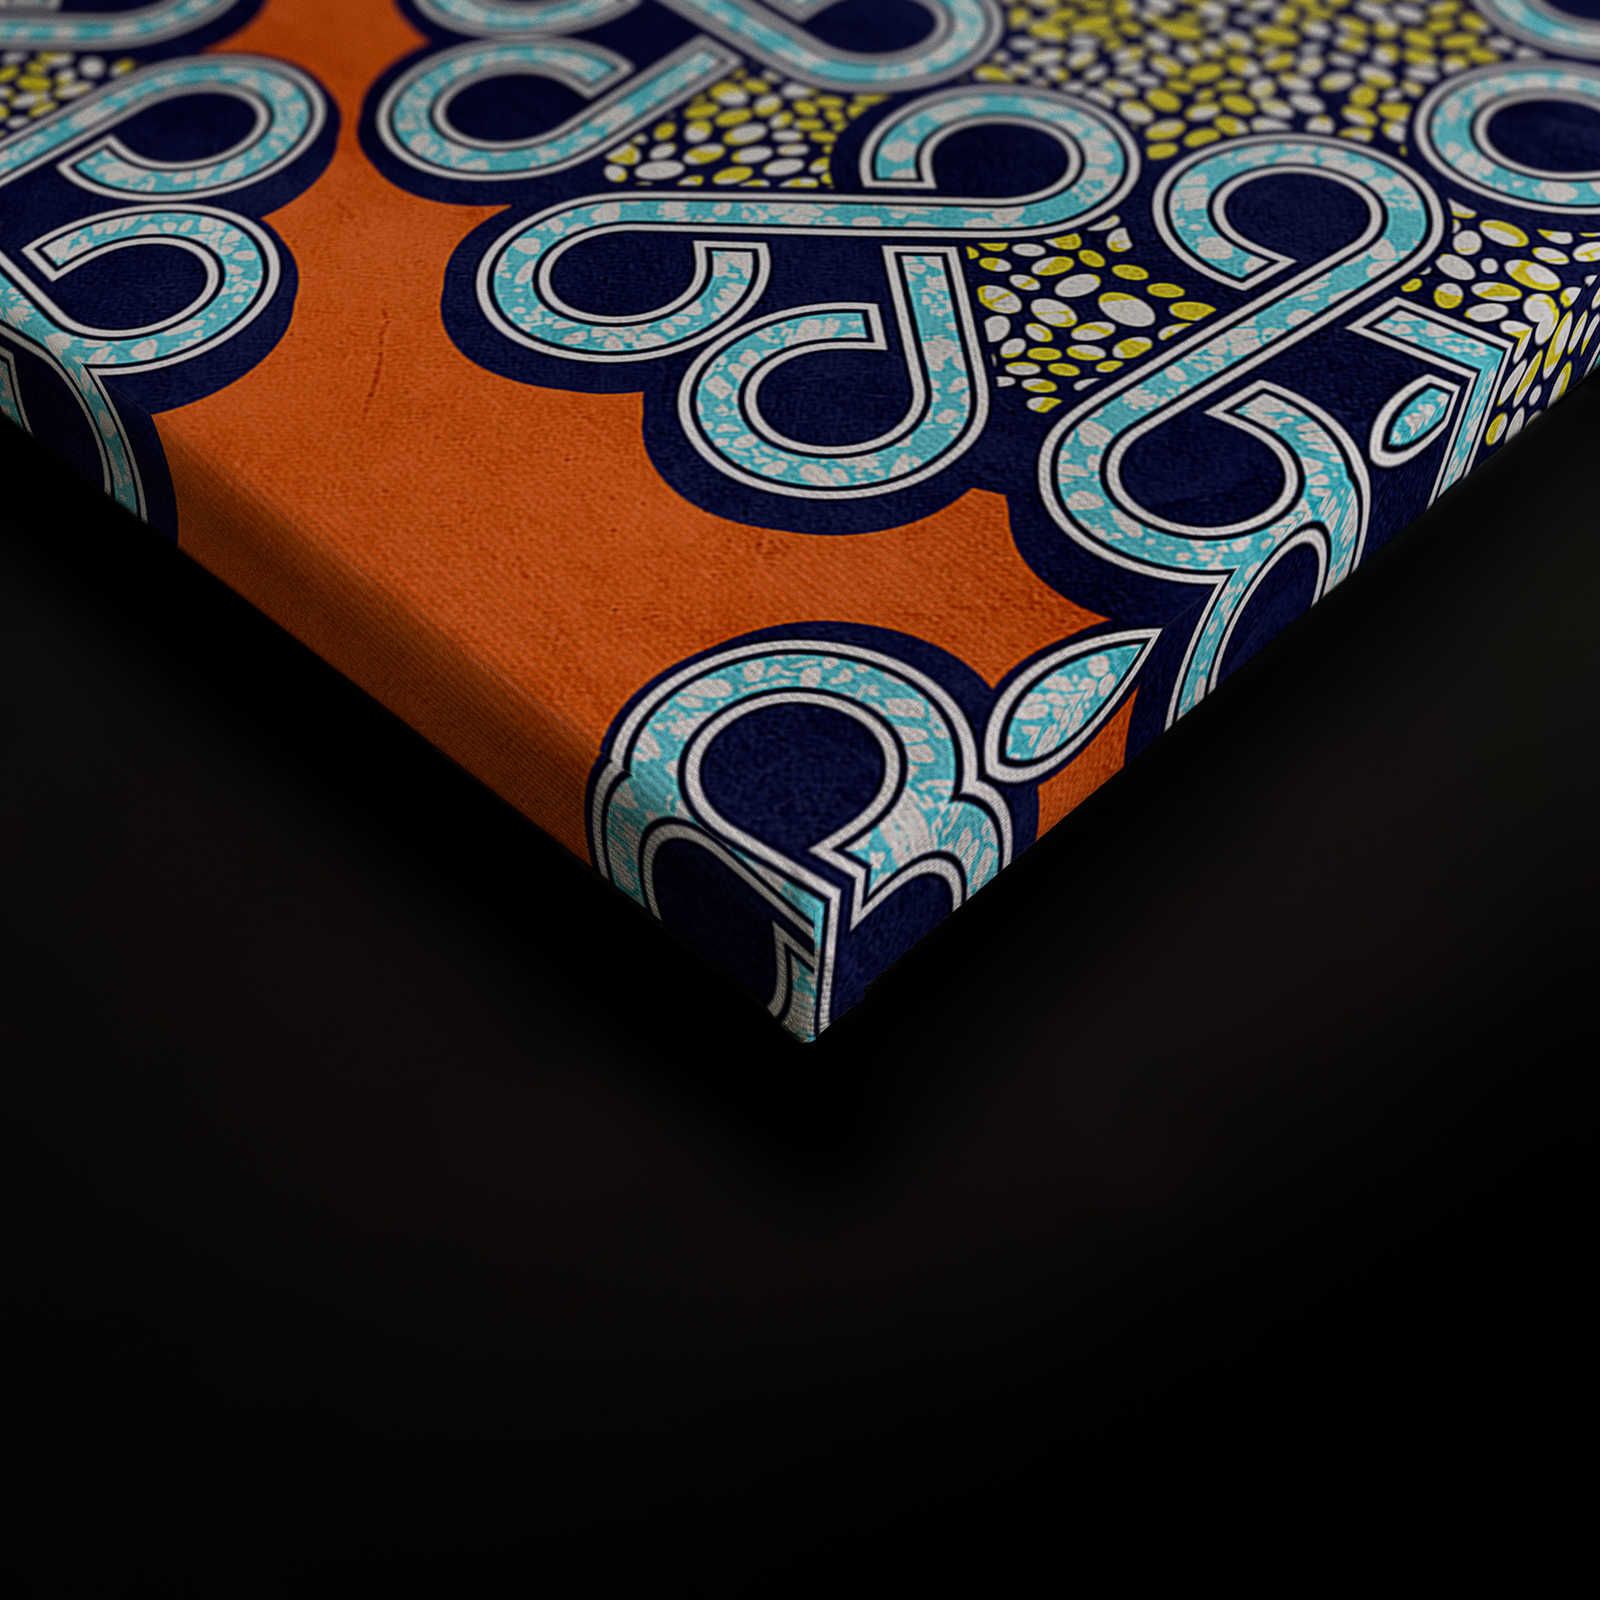             Dakar 2 - Toile africaine tissu de cire motif orange, bleu - 0,90 m x 0,60 m
        